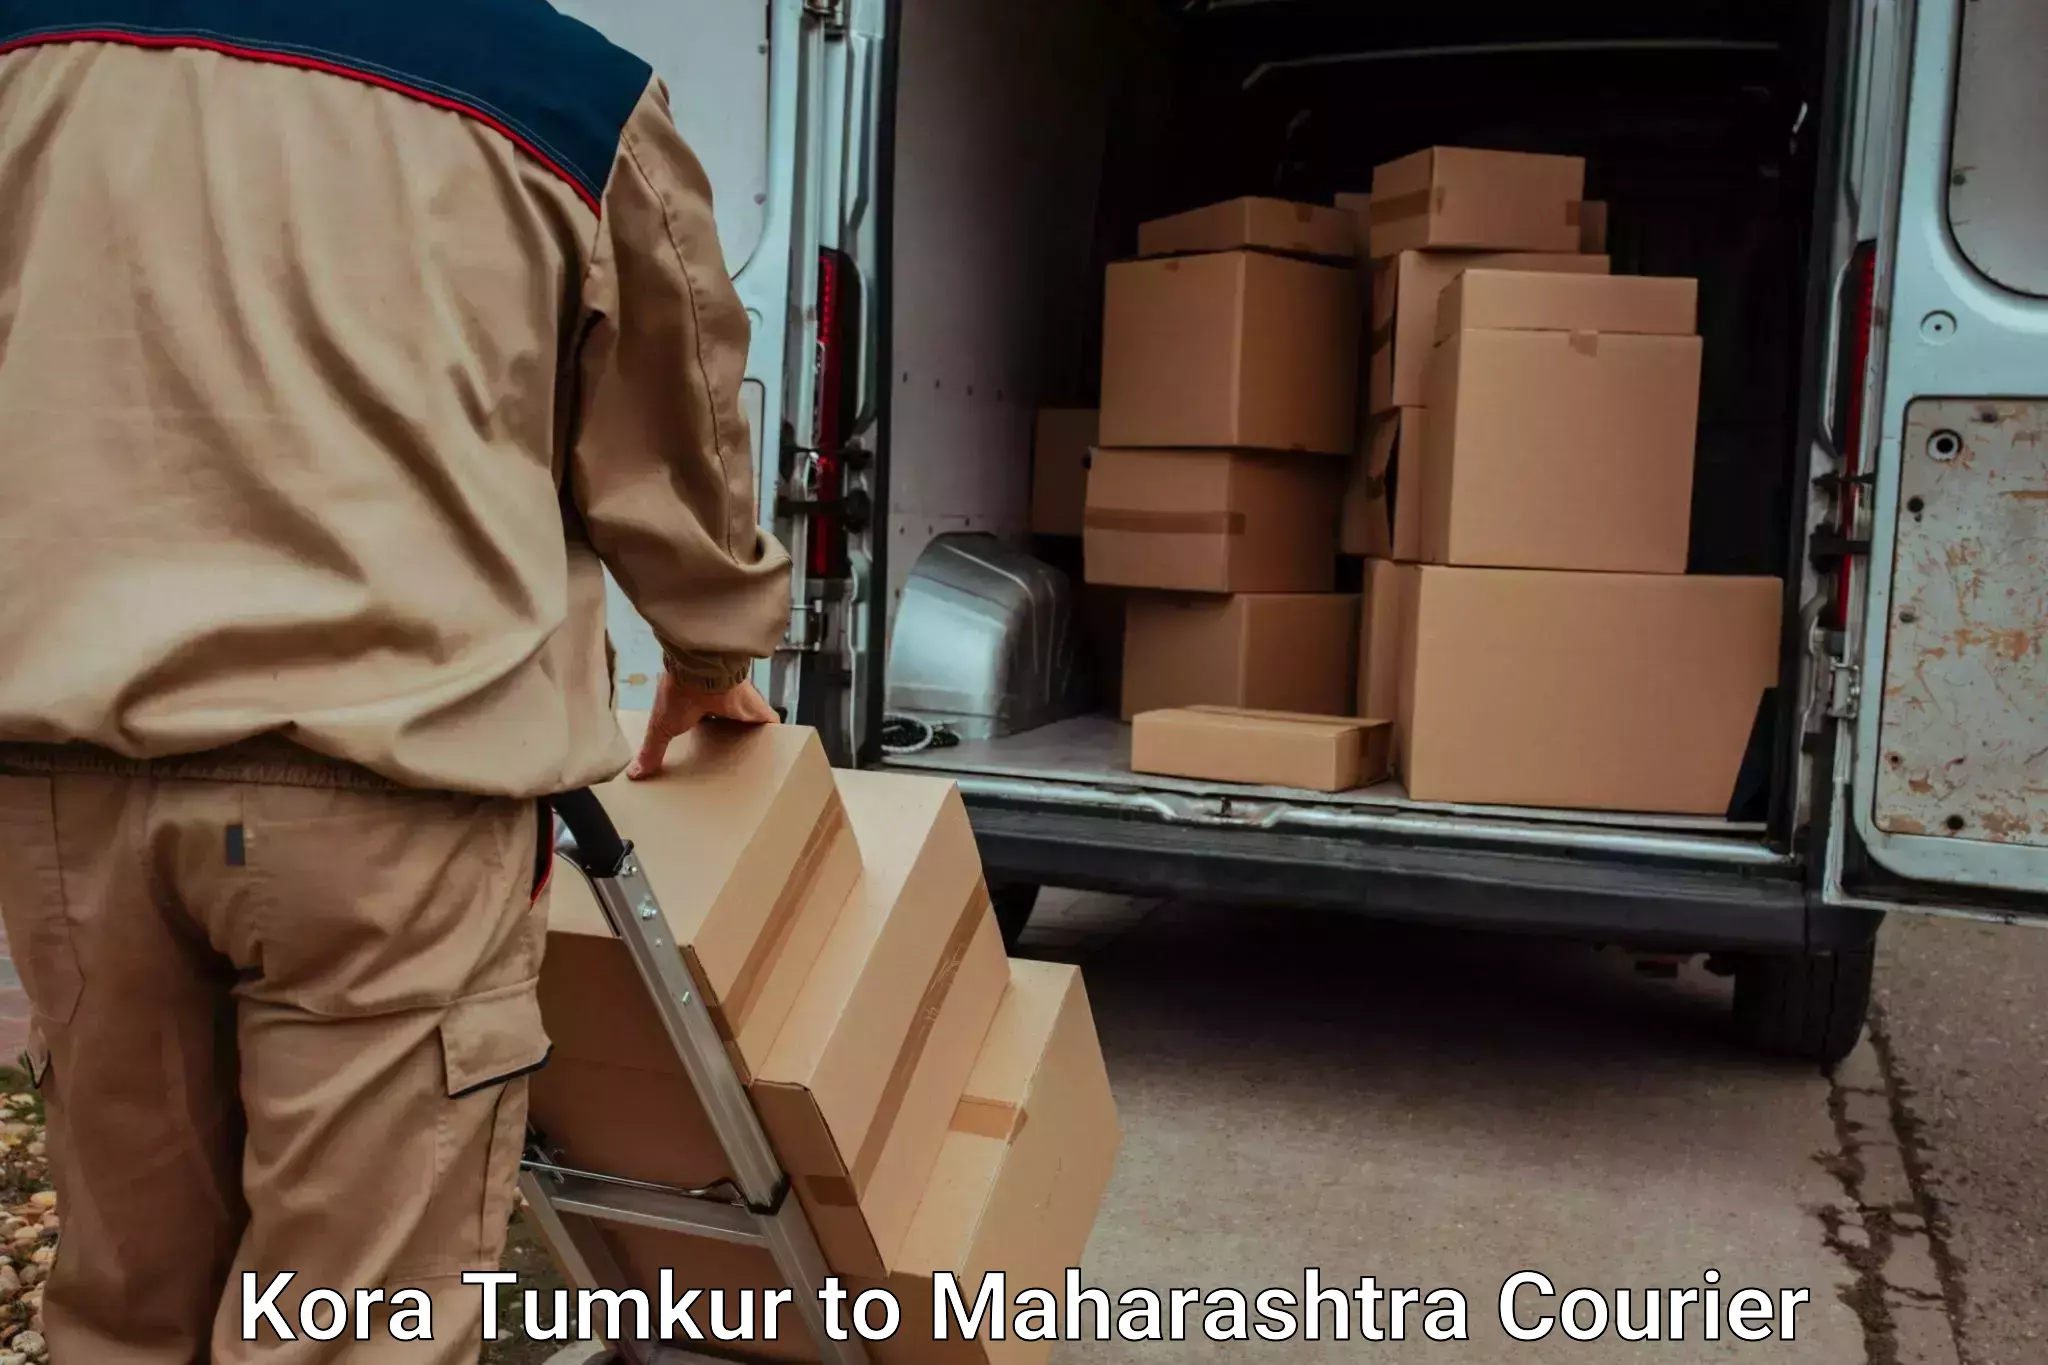 Dependable furniture transport Kora Tumkur to Nashik